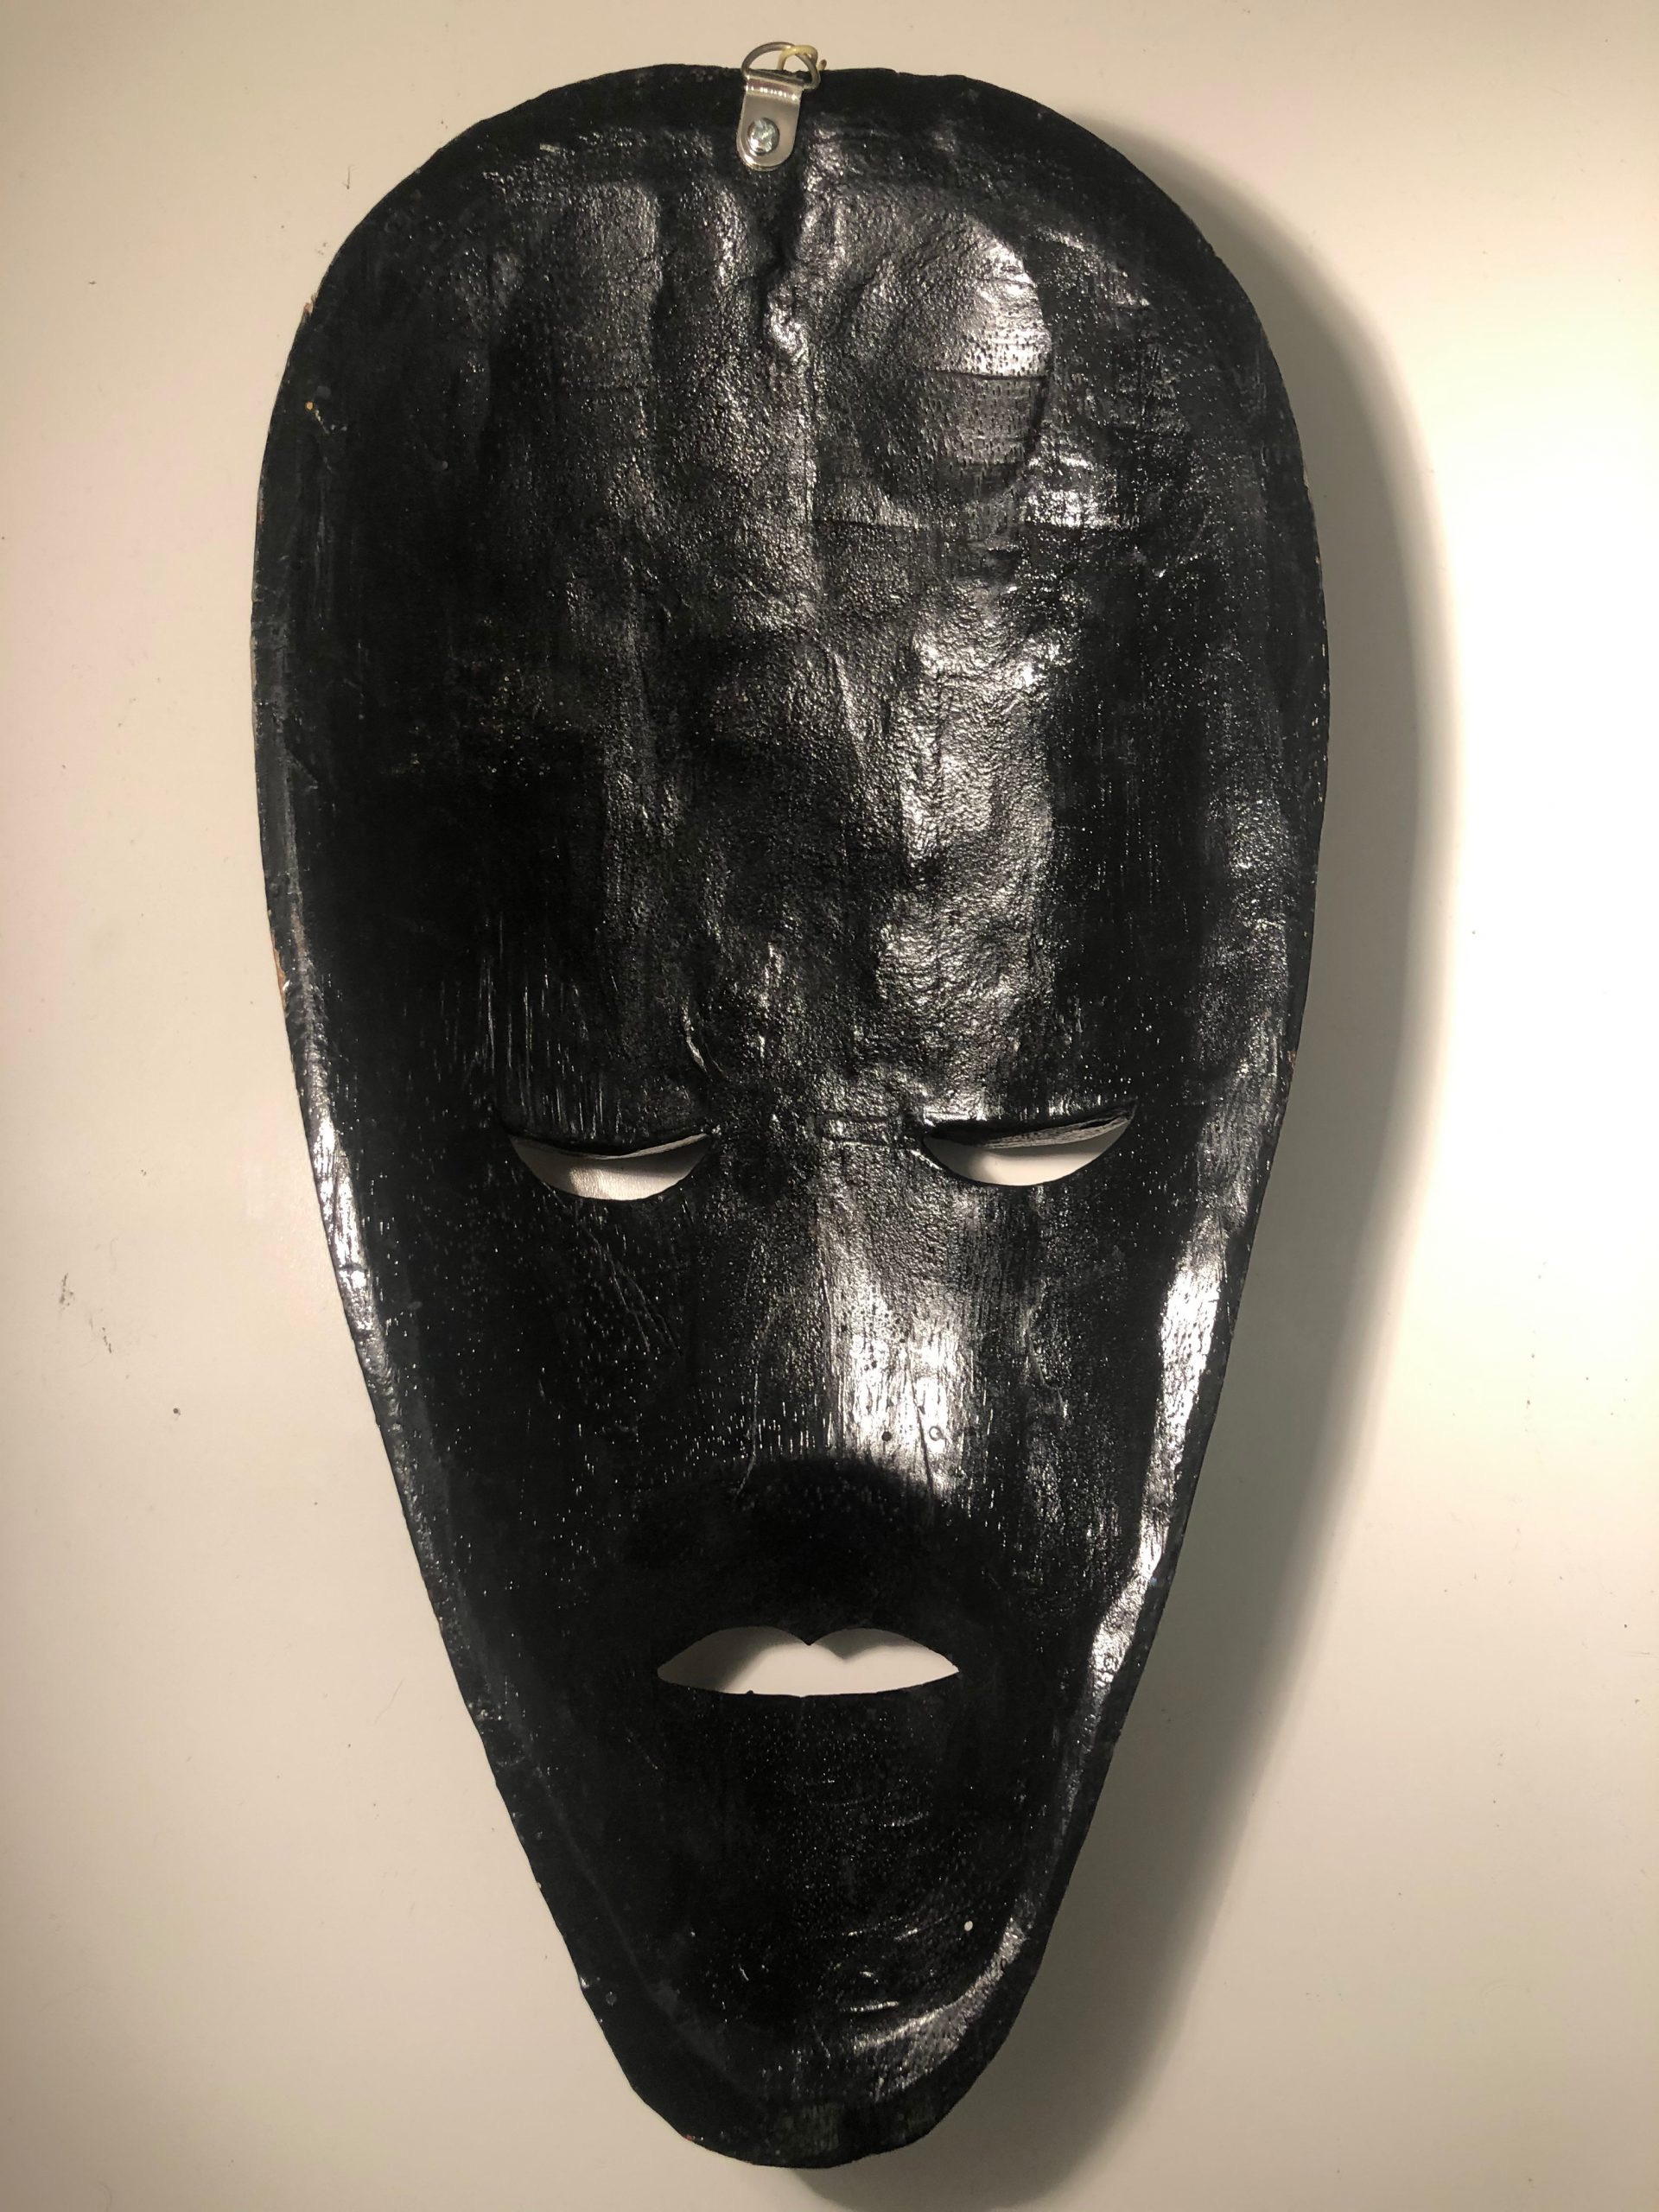 Handmade Tribal Mask